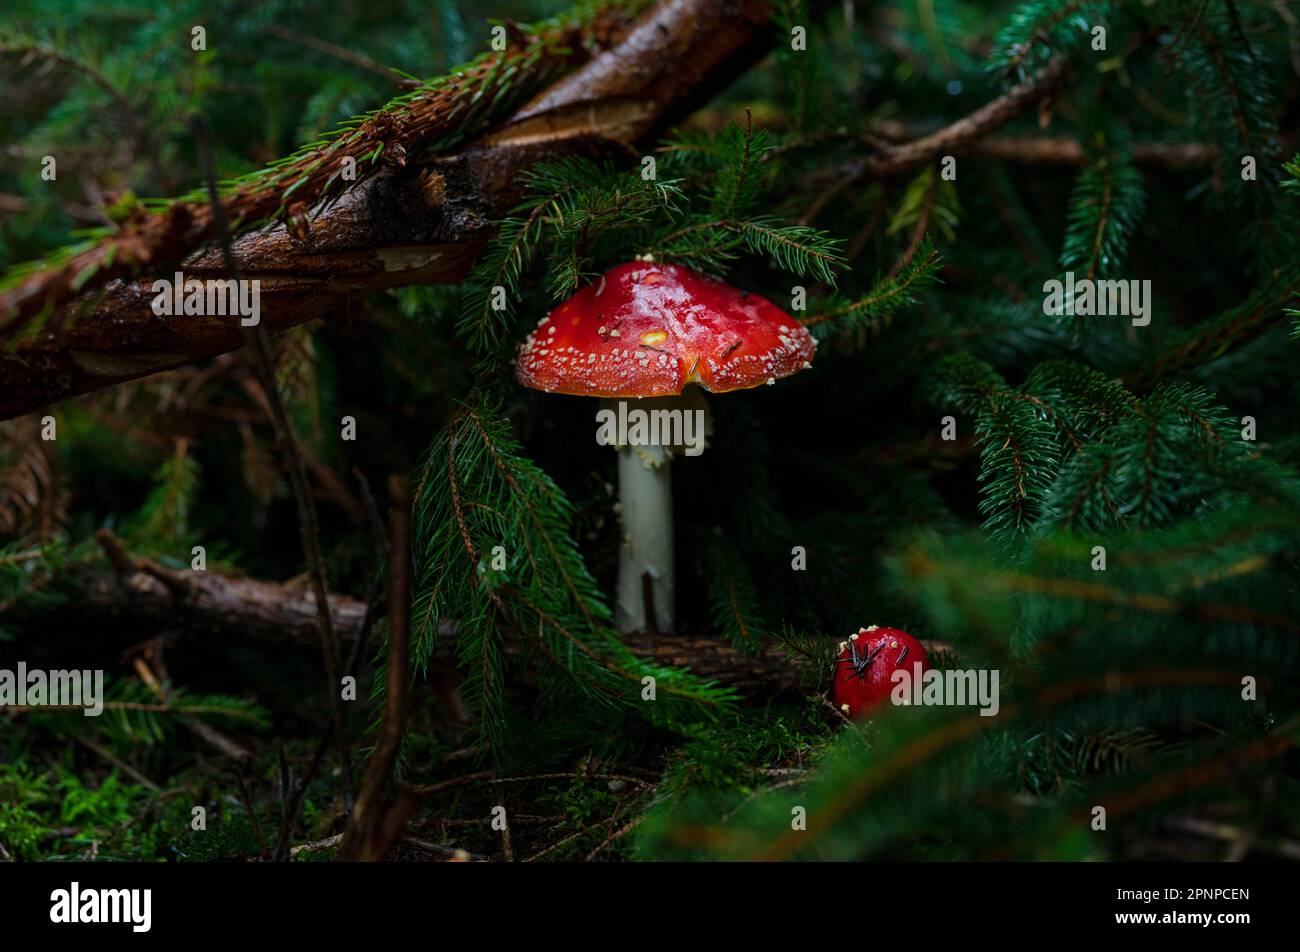 Survolez les champignons agariques qui poussent sur le fond de la forêt à Gloucestershire en automne. Champignon poussant dans le matériau en décomposition sur le terrain boisé Banque D'Images